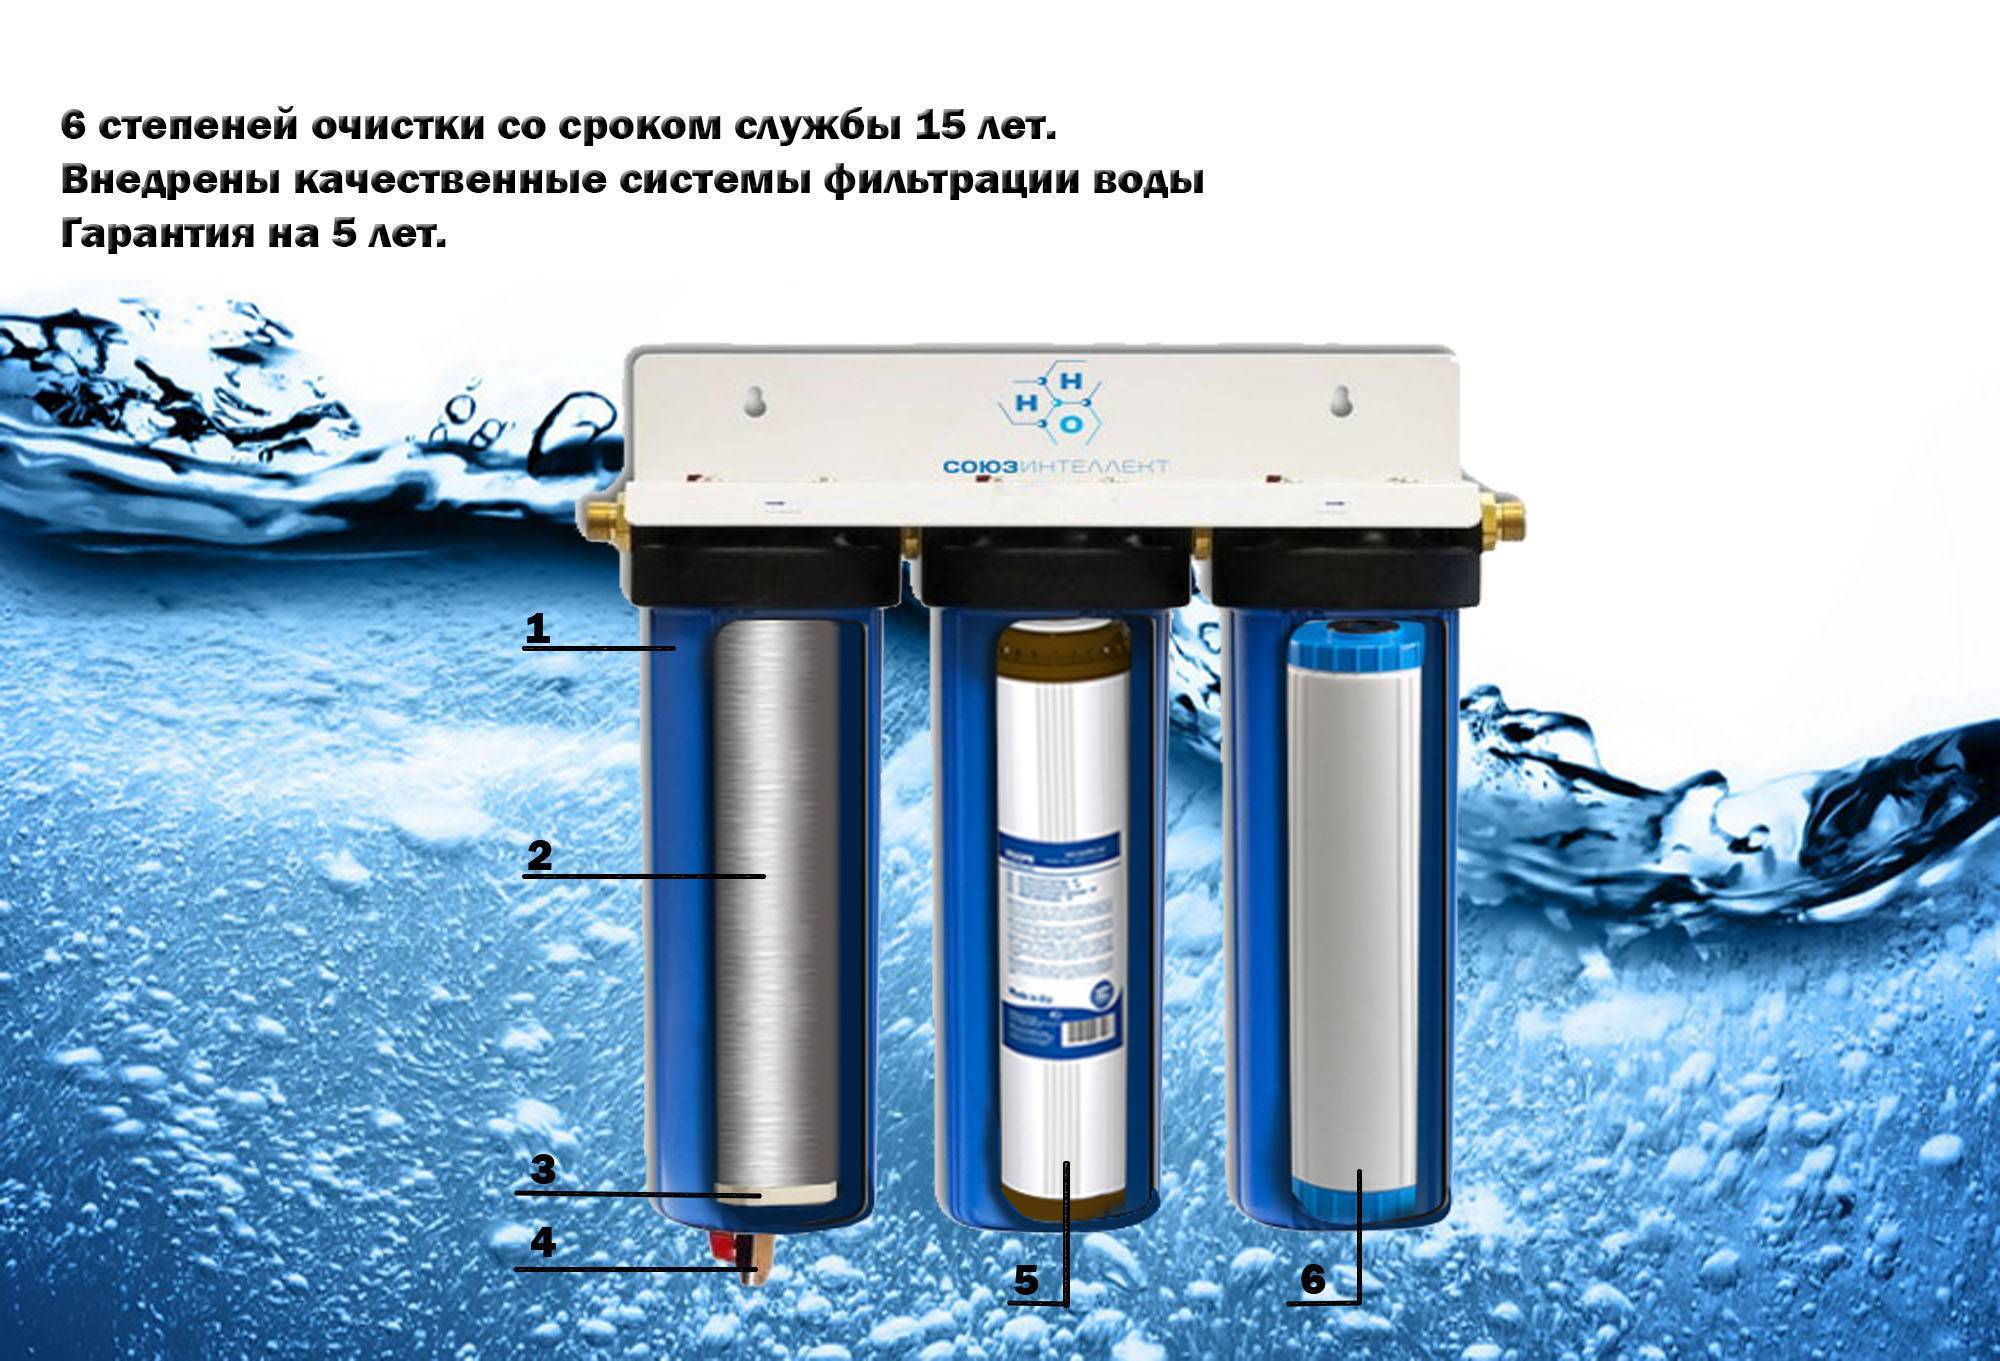 Фильтры для очистки воды от извести. Аурус фильтр для воды. Титановый фильтр для очистки воды. Титановые фильтры для очистки воды из скважины. Степени очистки воды фильтрами.